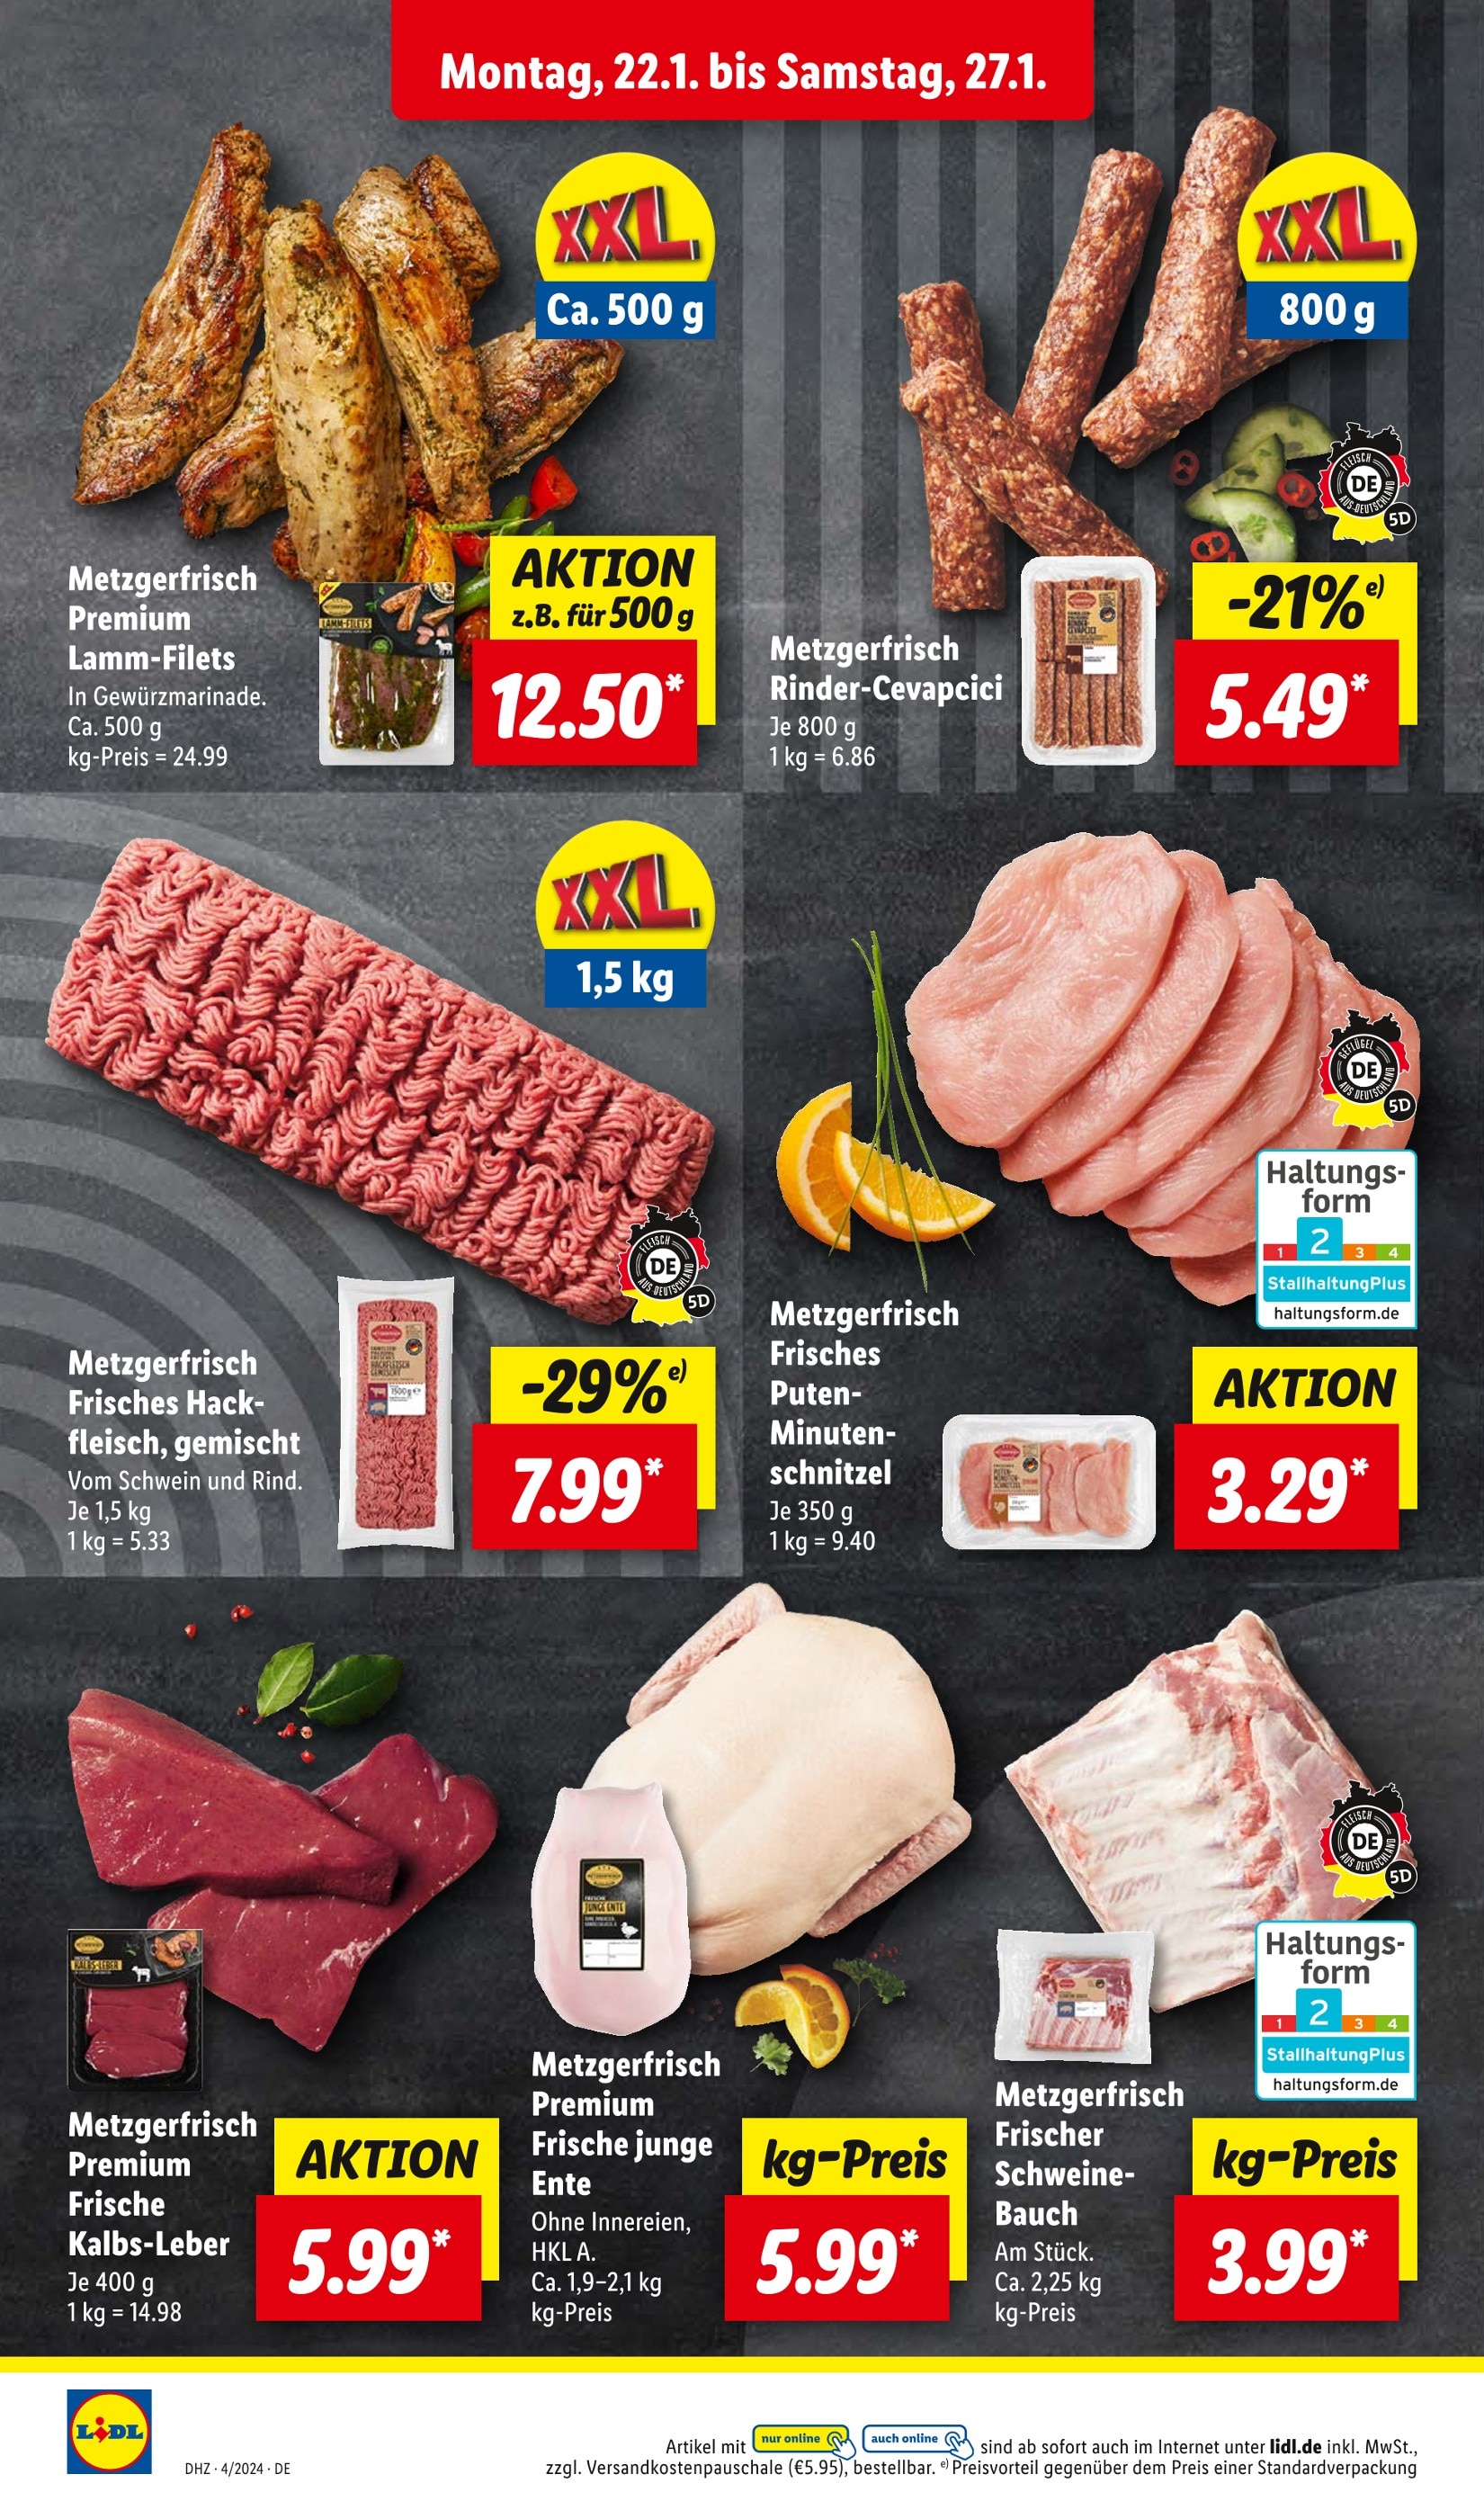 Schweinebauch kaufen in Görlitz - günstige Angebote in Görlitz